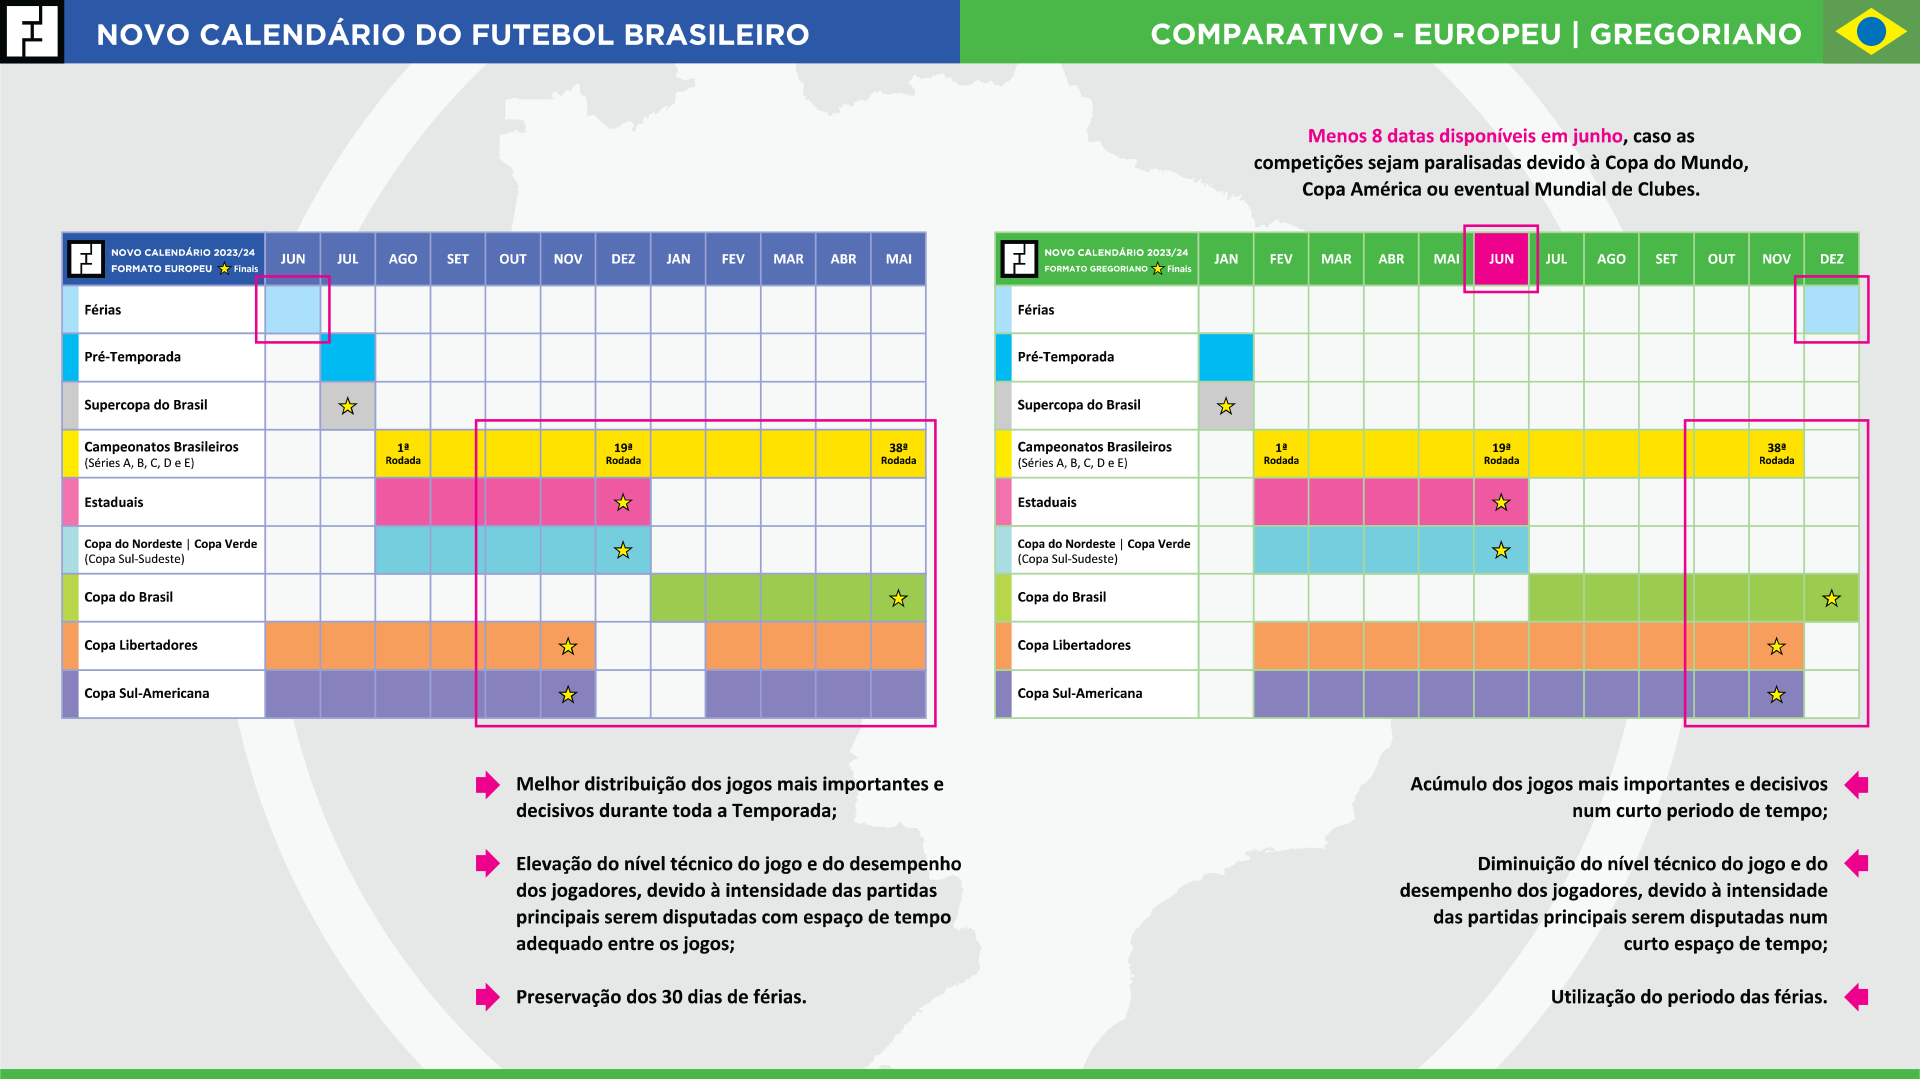 Proposta do Futbox para o Novo Calendário Brasileiro